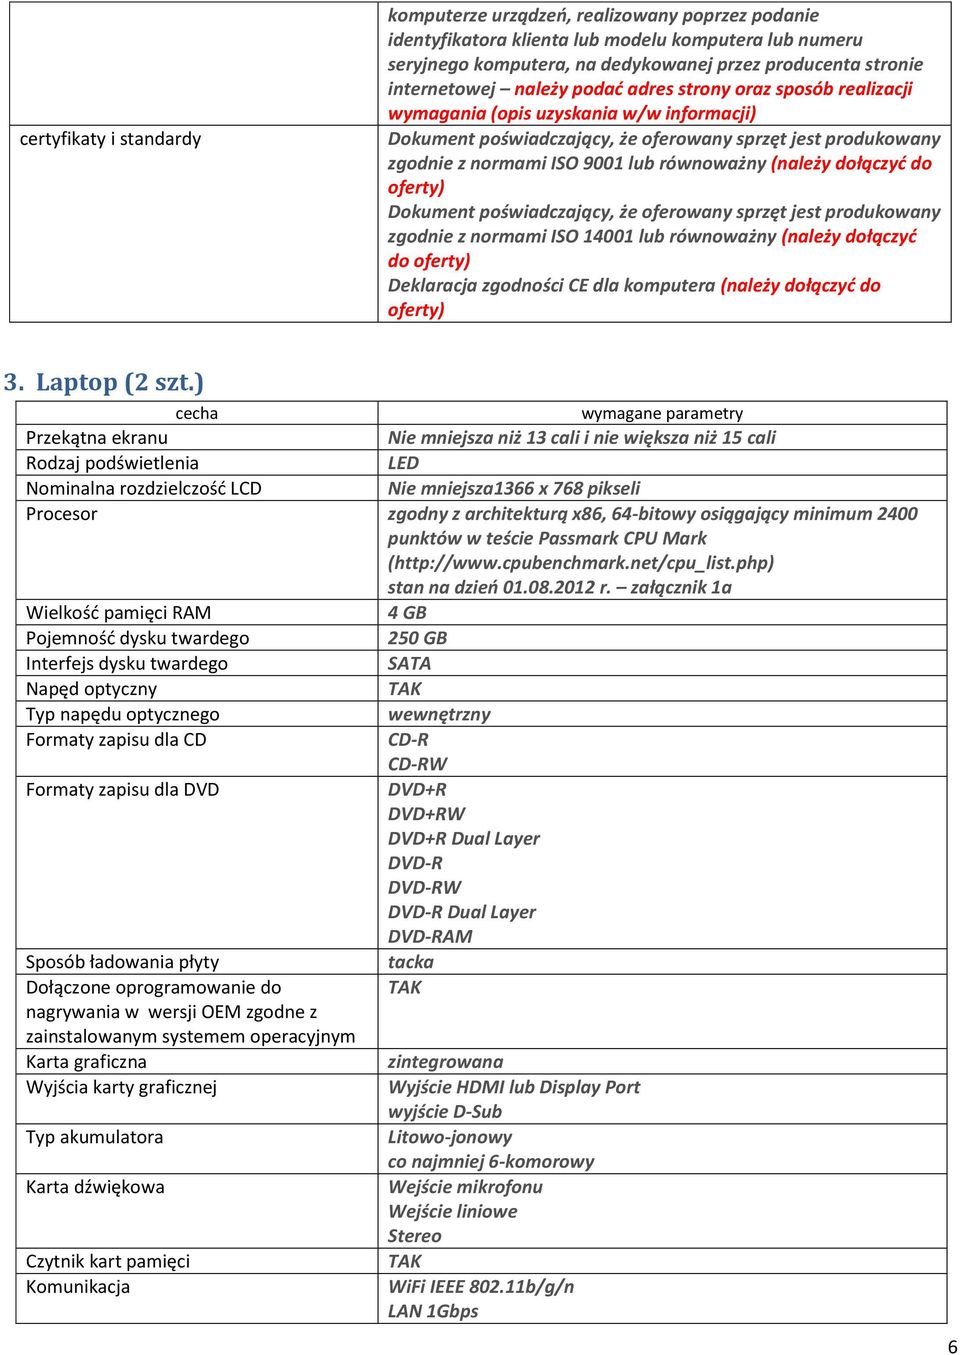 równoważny (należy dołączyć do Dokument poświadczający, że oferowany sprzęt jest produkowany zgodnie z normami ISO 14001 lub równoważny (należy dołączyć do Deklaracja zgodności CE dla komputera